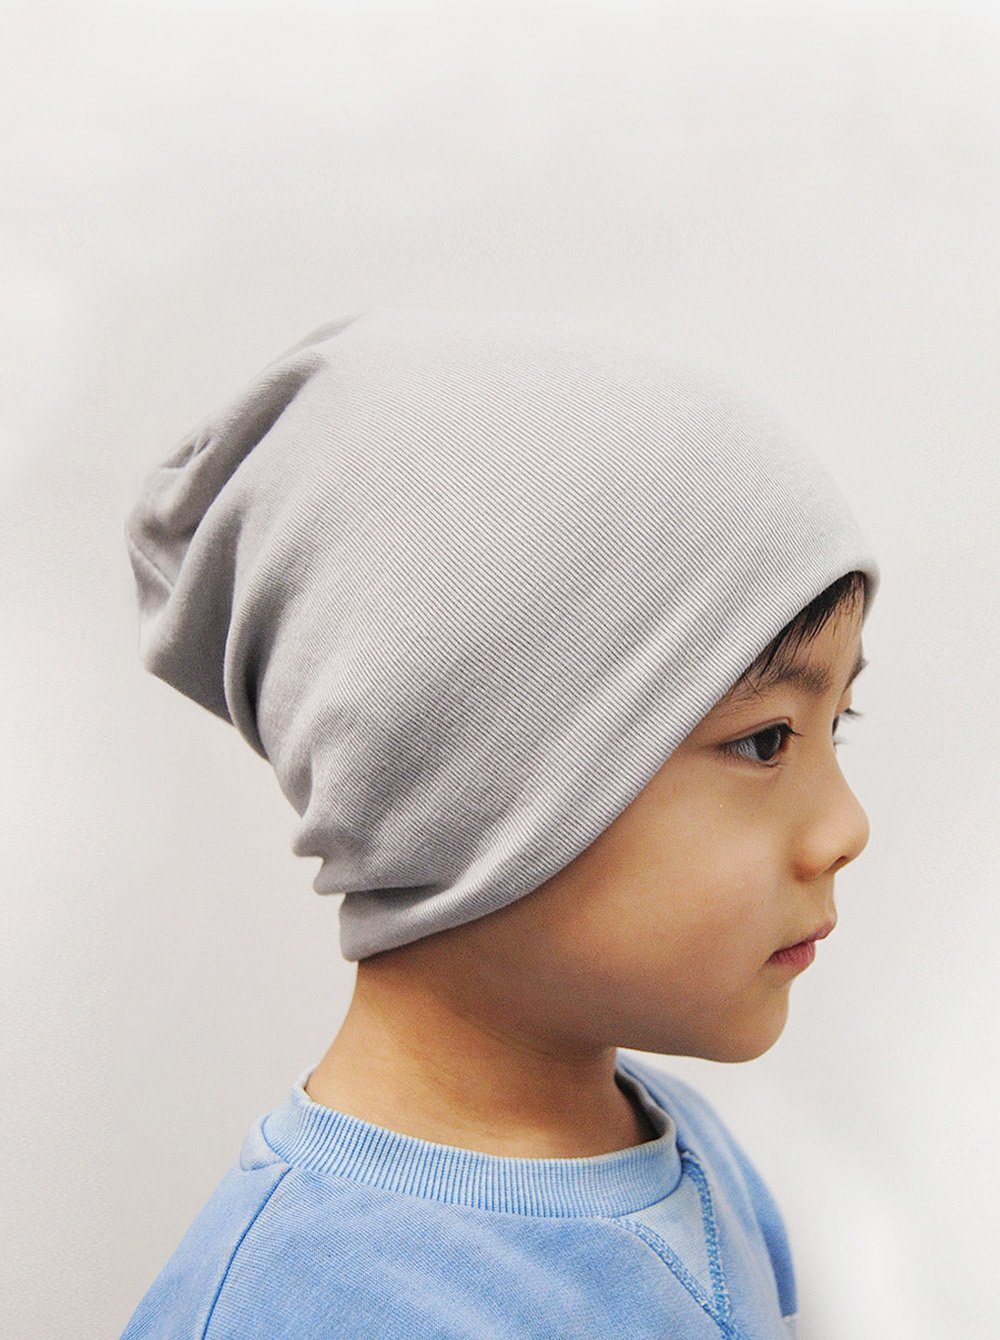 axy Beanie Kinder Slouch Beanie Long Mütze 1-5 Jahren Mütze für Jungen Mädchen Kleinkind Unisex Unifarbe Grau